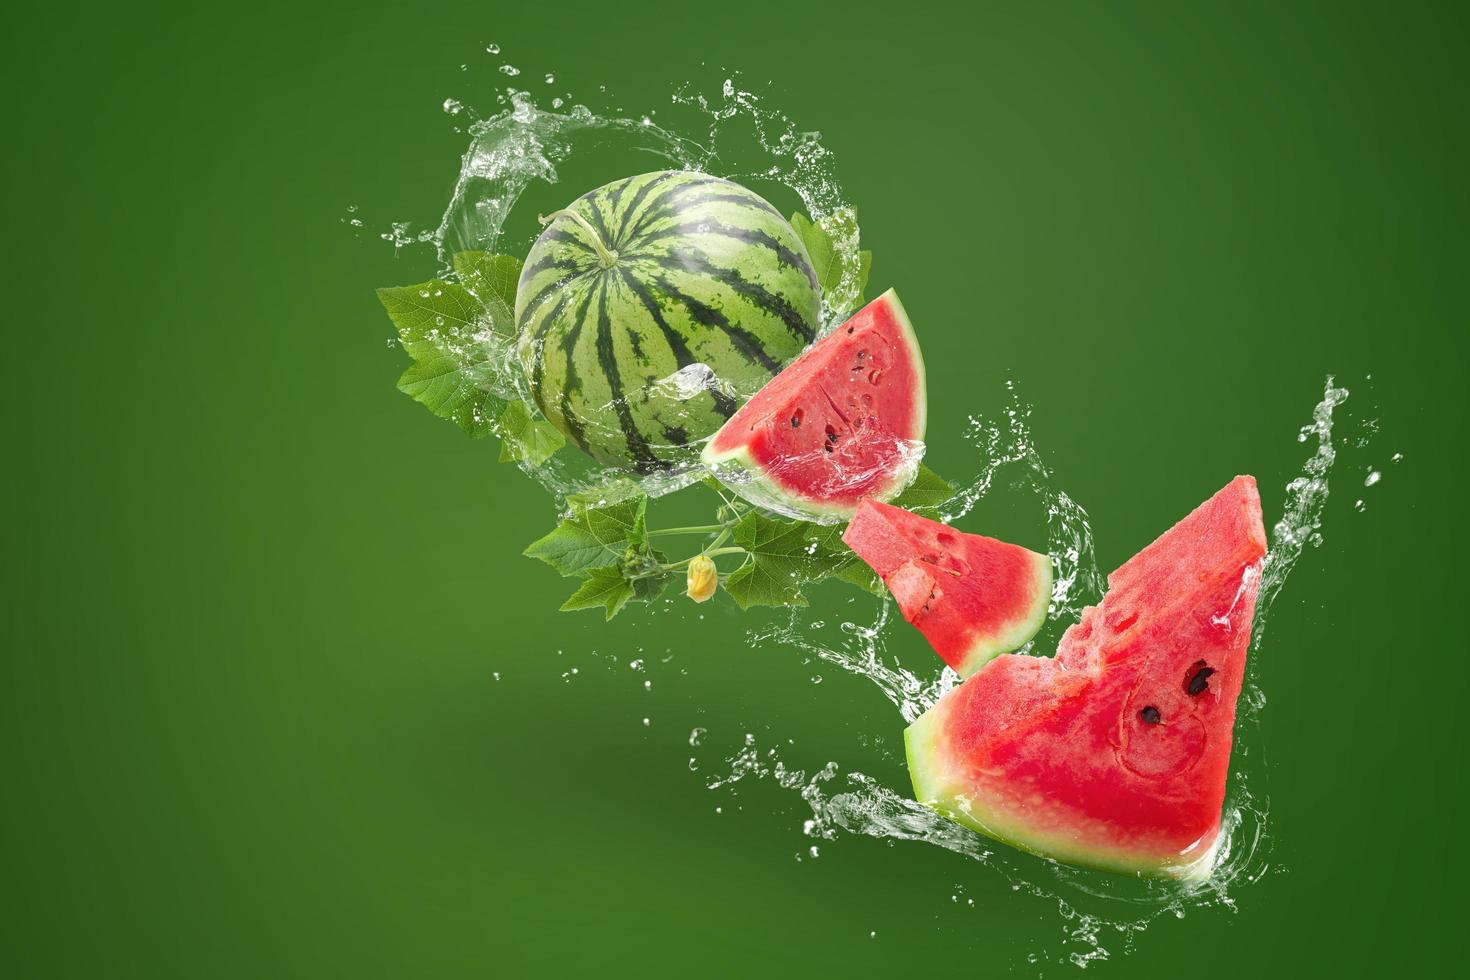 vatten stänk på vattenmelon på grön bakgrund foto